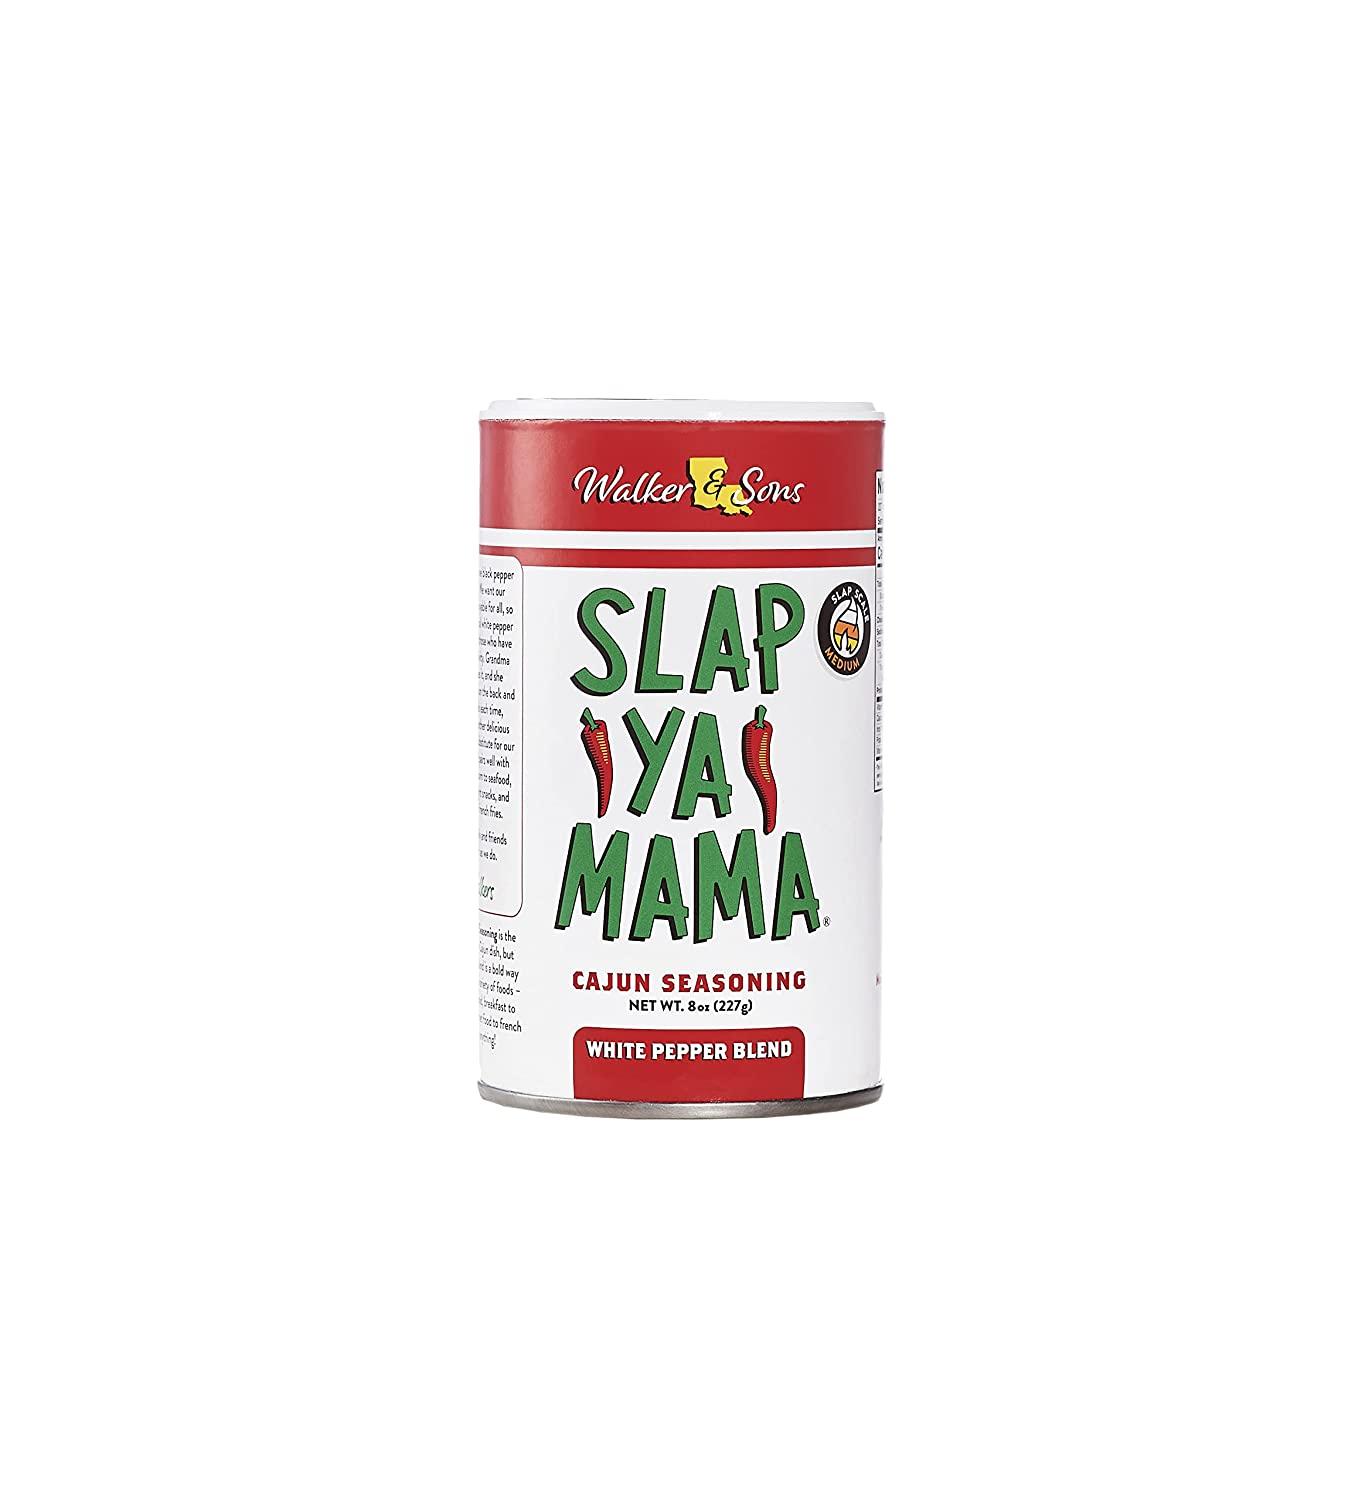  Slap Ya Mama Louisiana Style Hot Sauce, Cajun Pepper